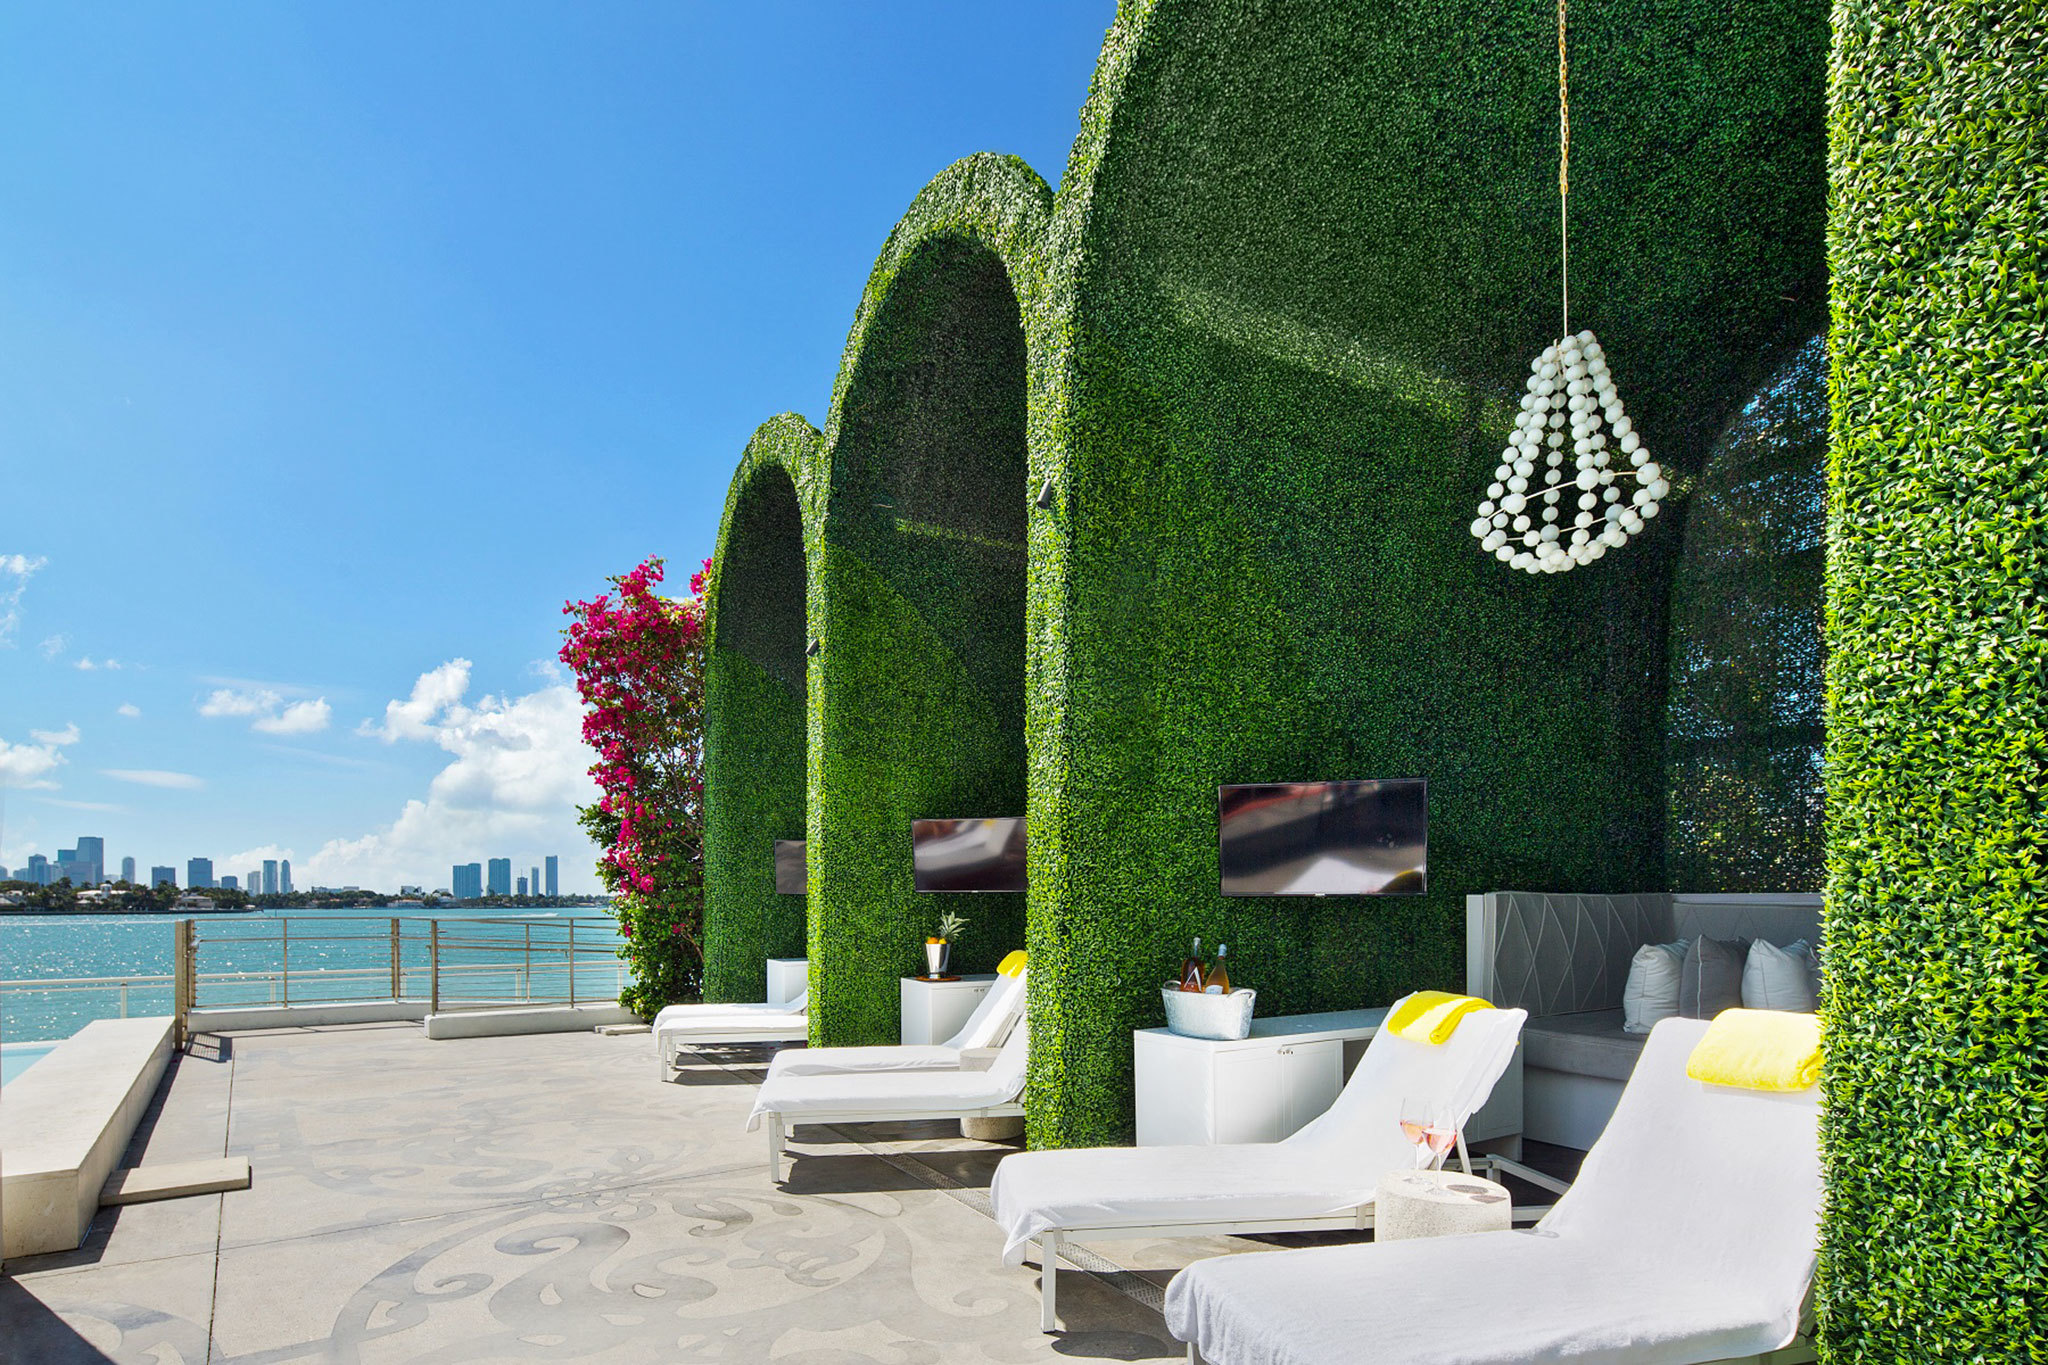 Mondrian South Beach | Hotels in South Beach, Miami